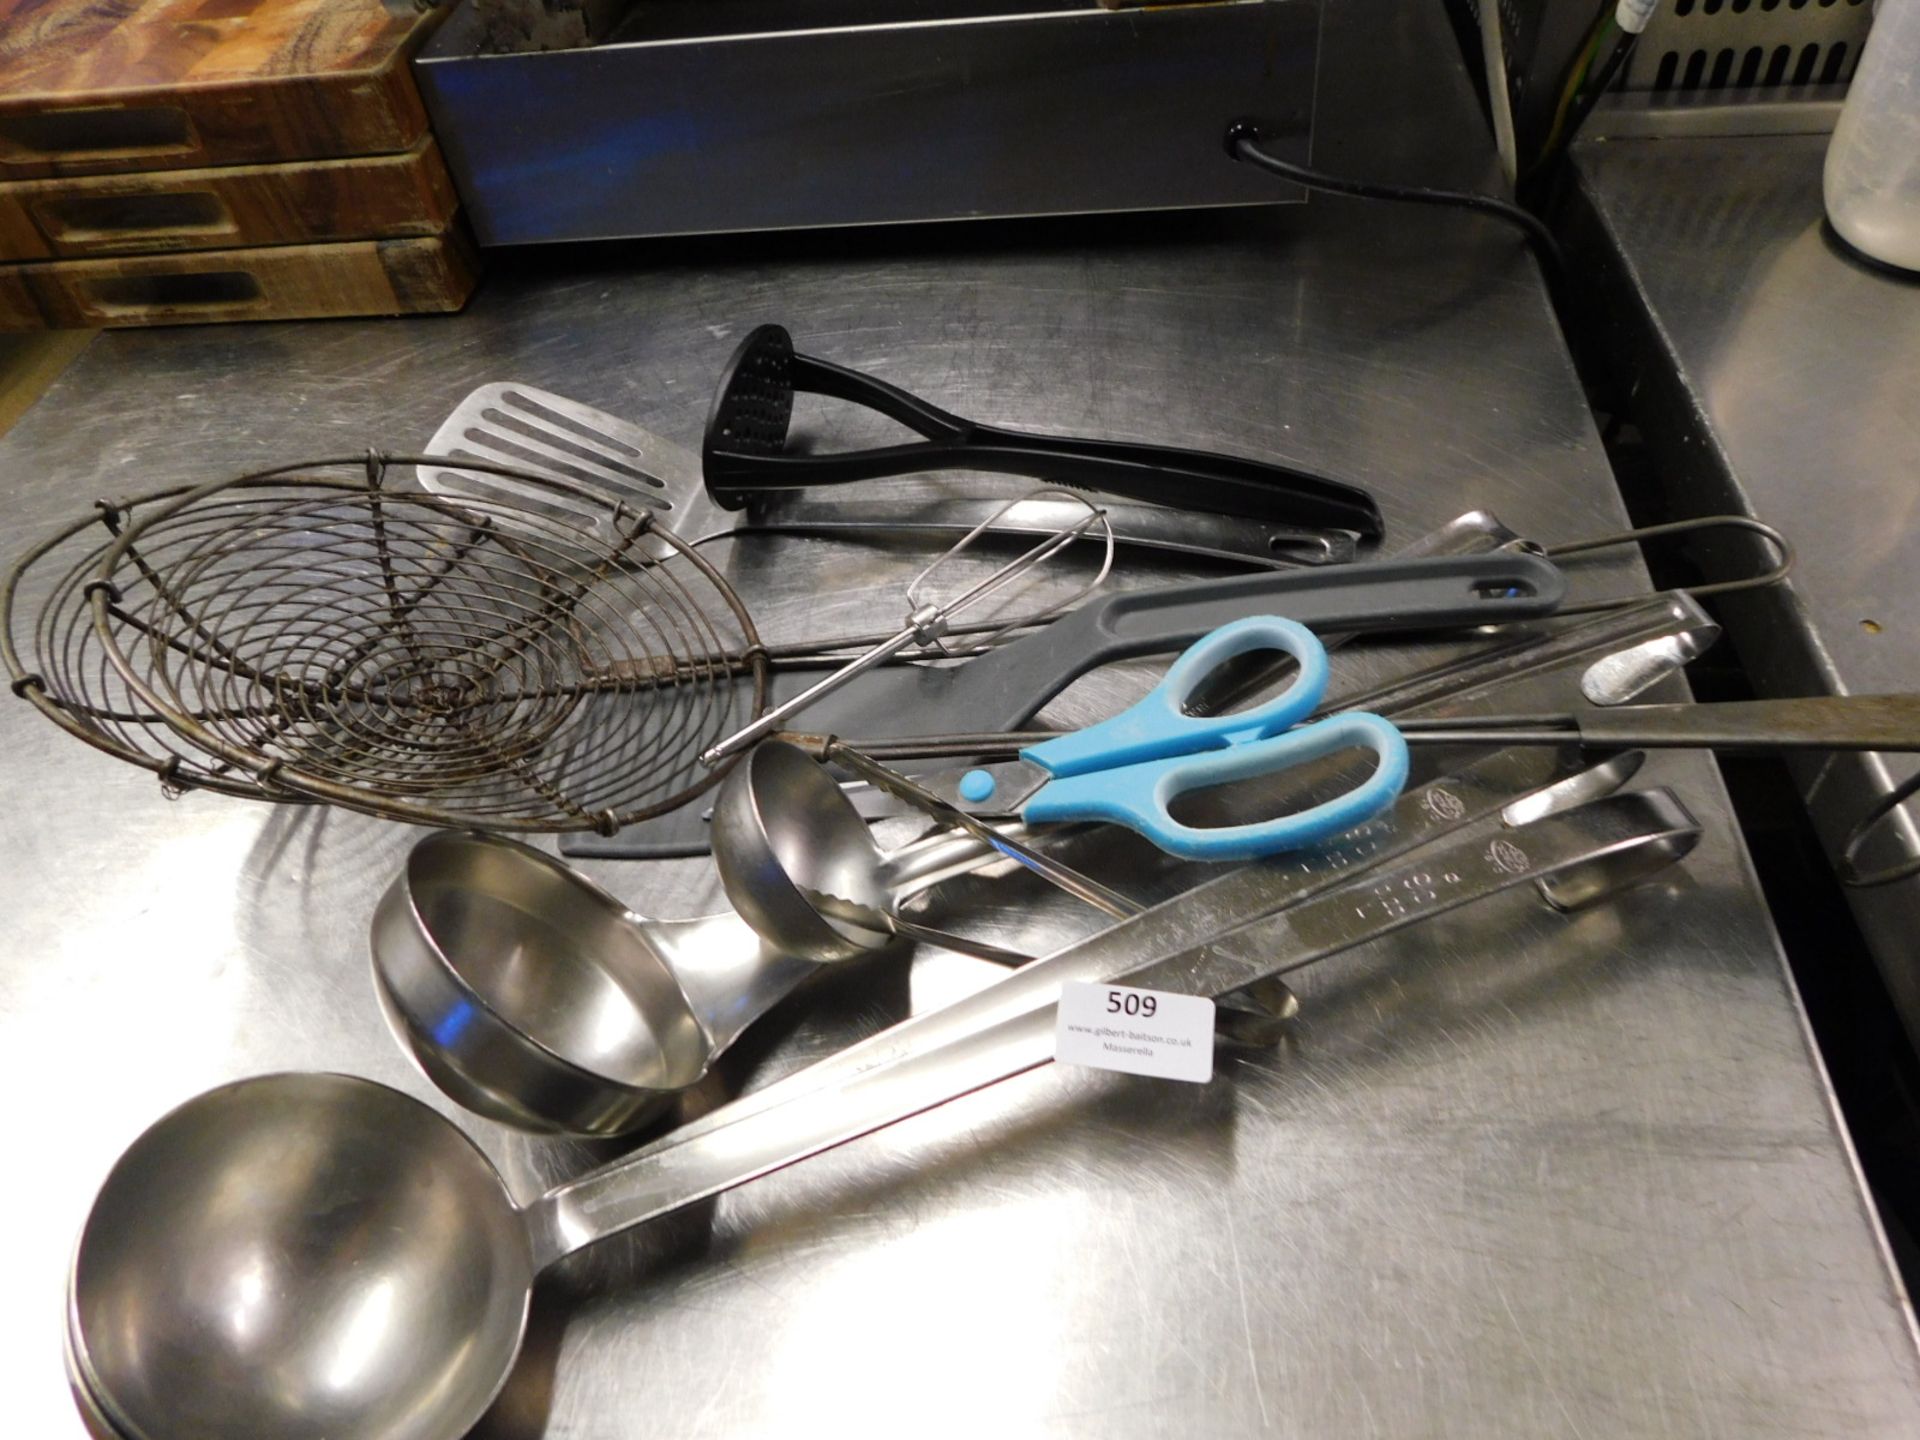 * kitchen utensils